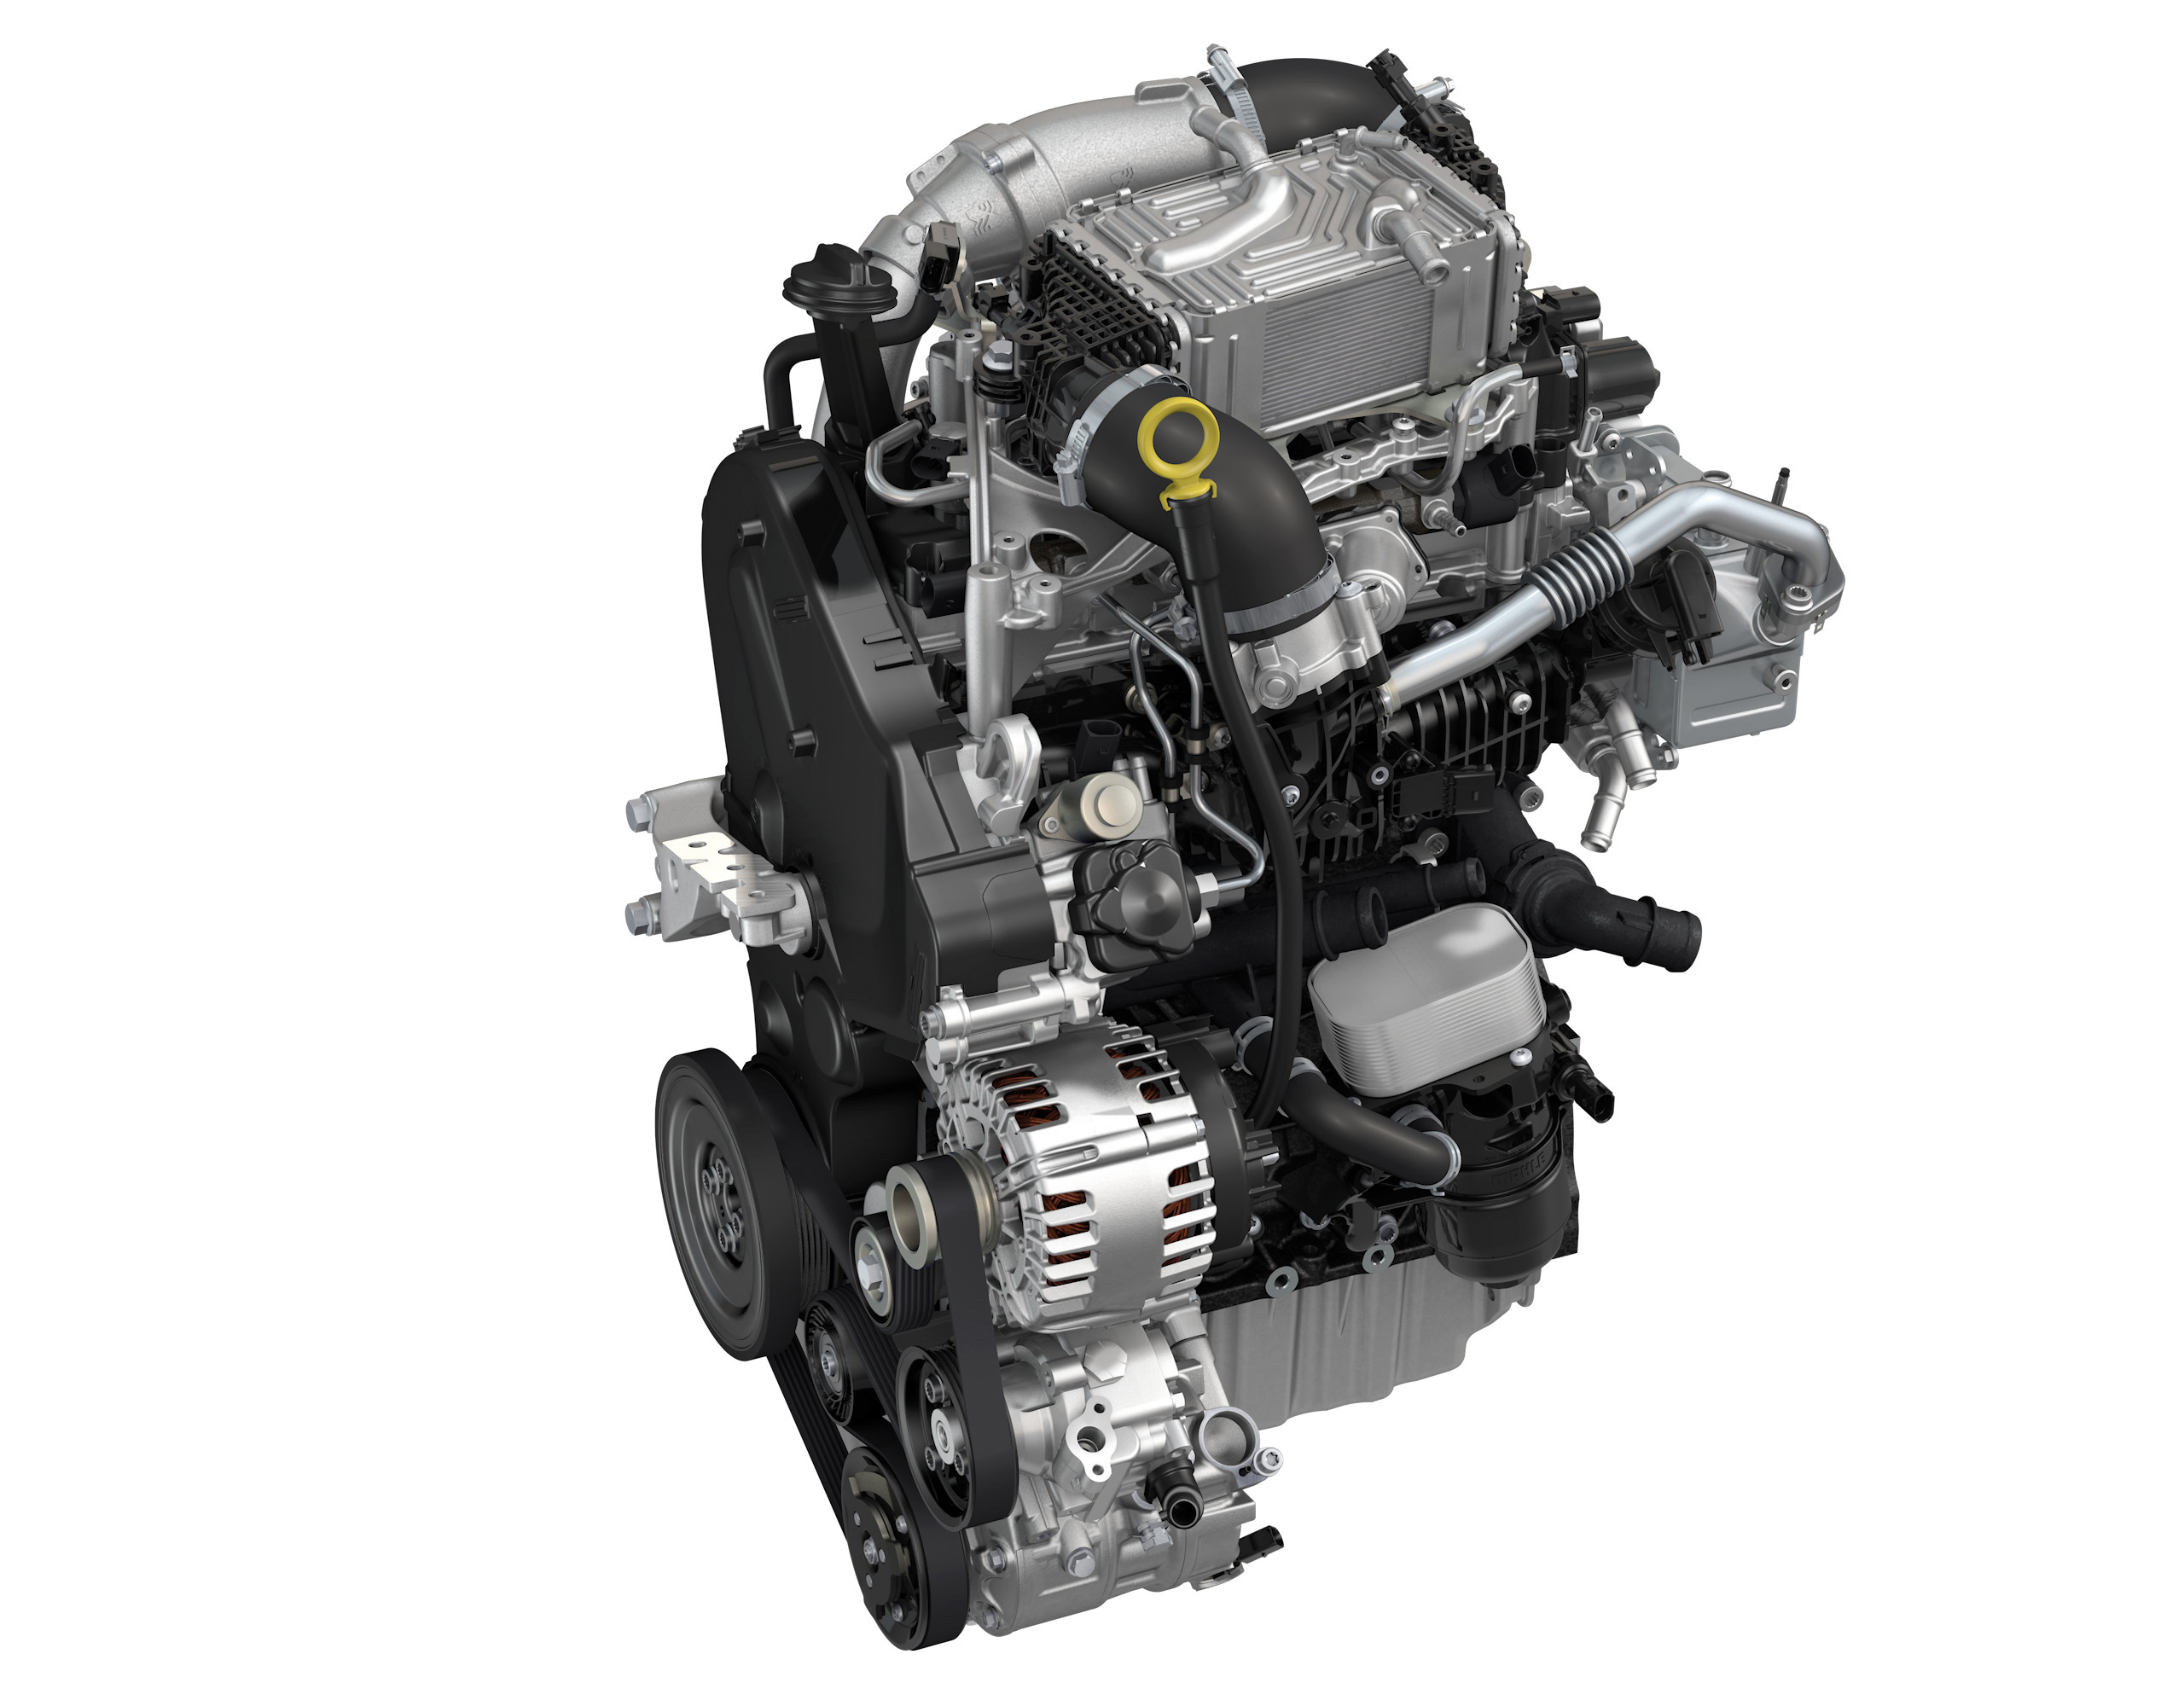 Автомобили двигатель 1.4. Двигатель Крафтер 2.0 дизель. 2.0 TDI 140 Л.С дизель. Двигатель 1.6 дизель Фольксваген. Volkswagen с двигателем 2.0 TDI.